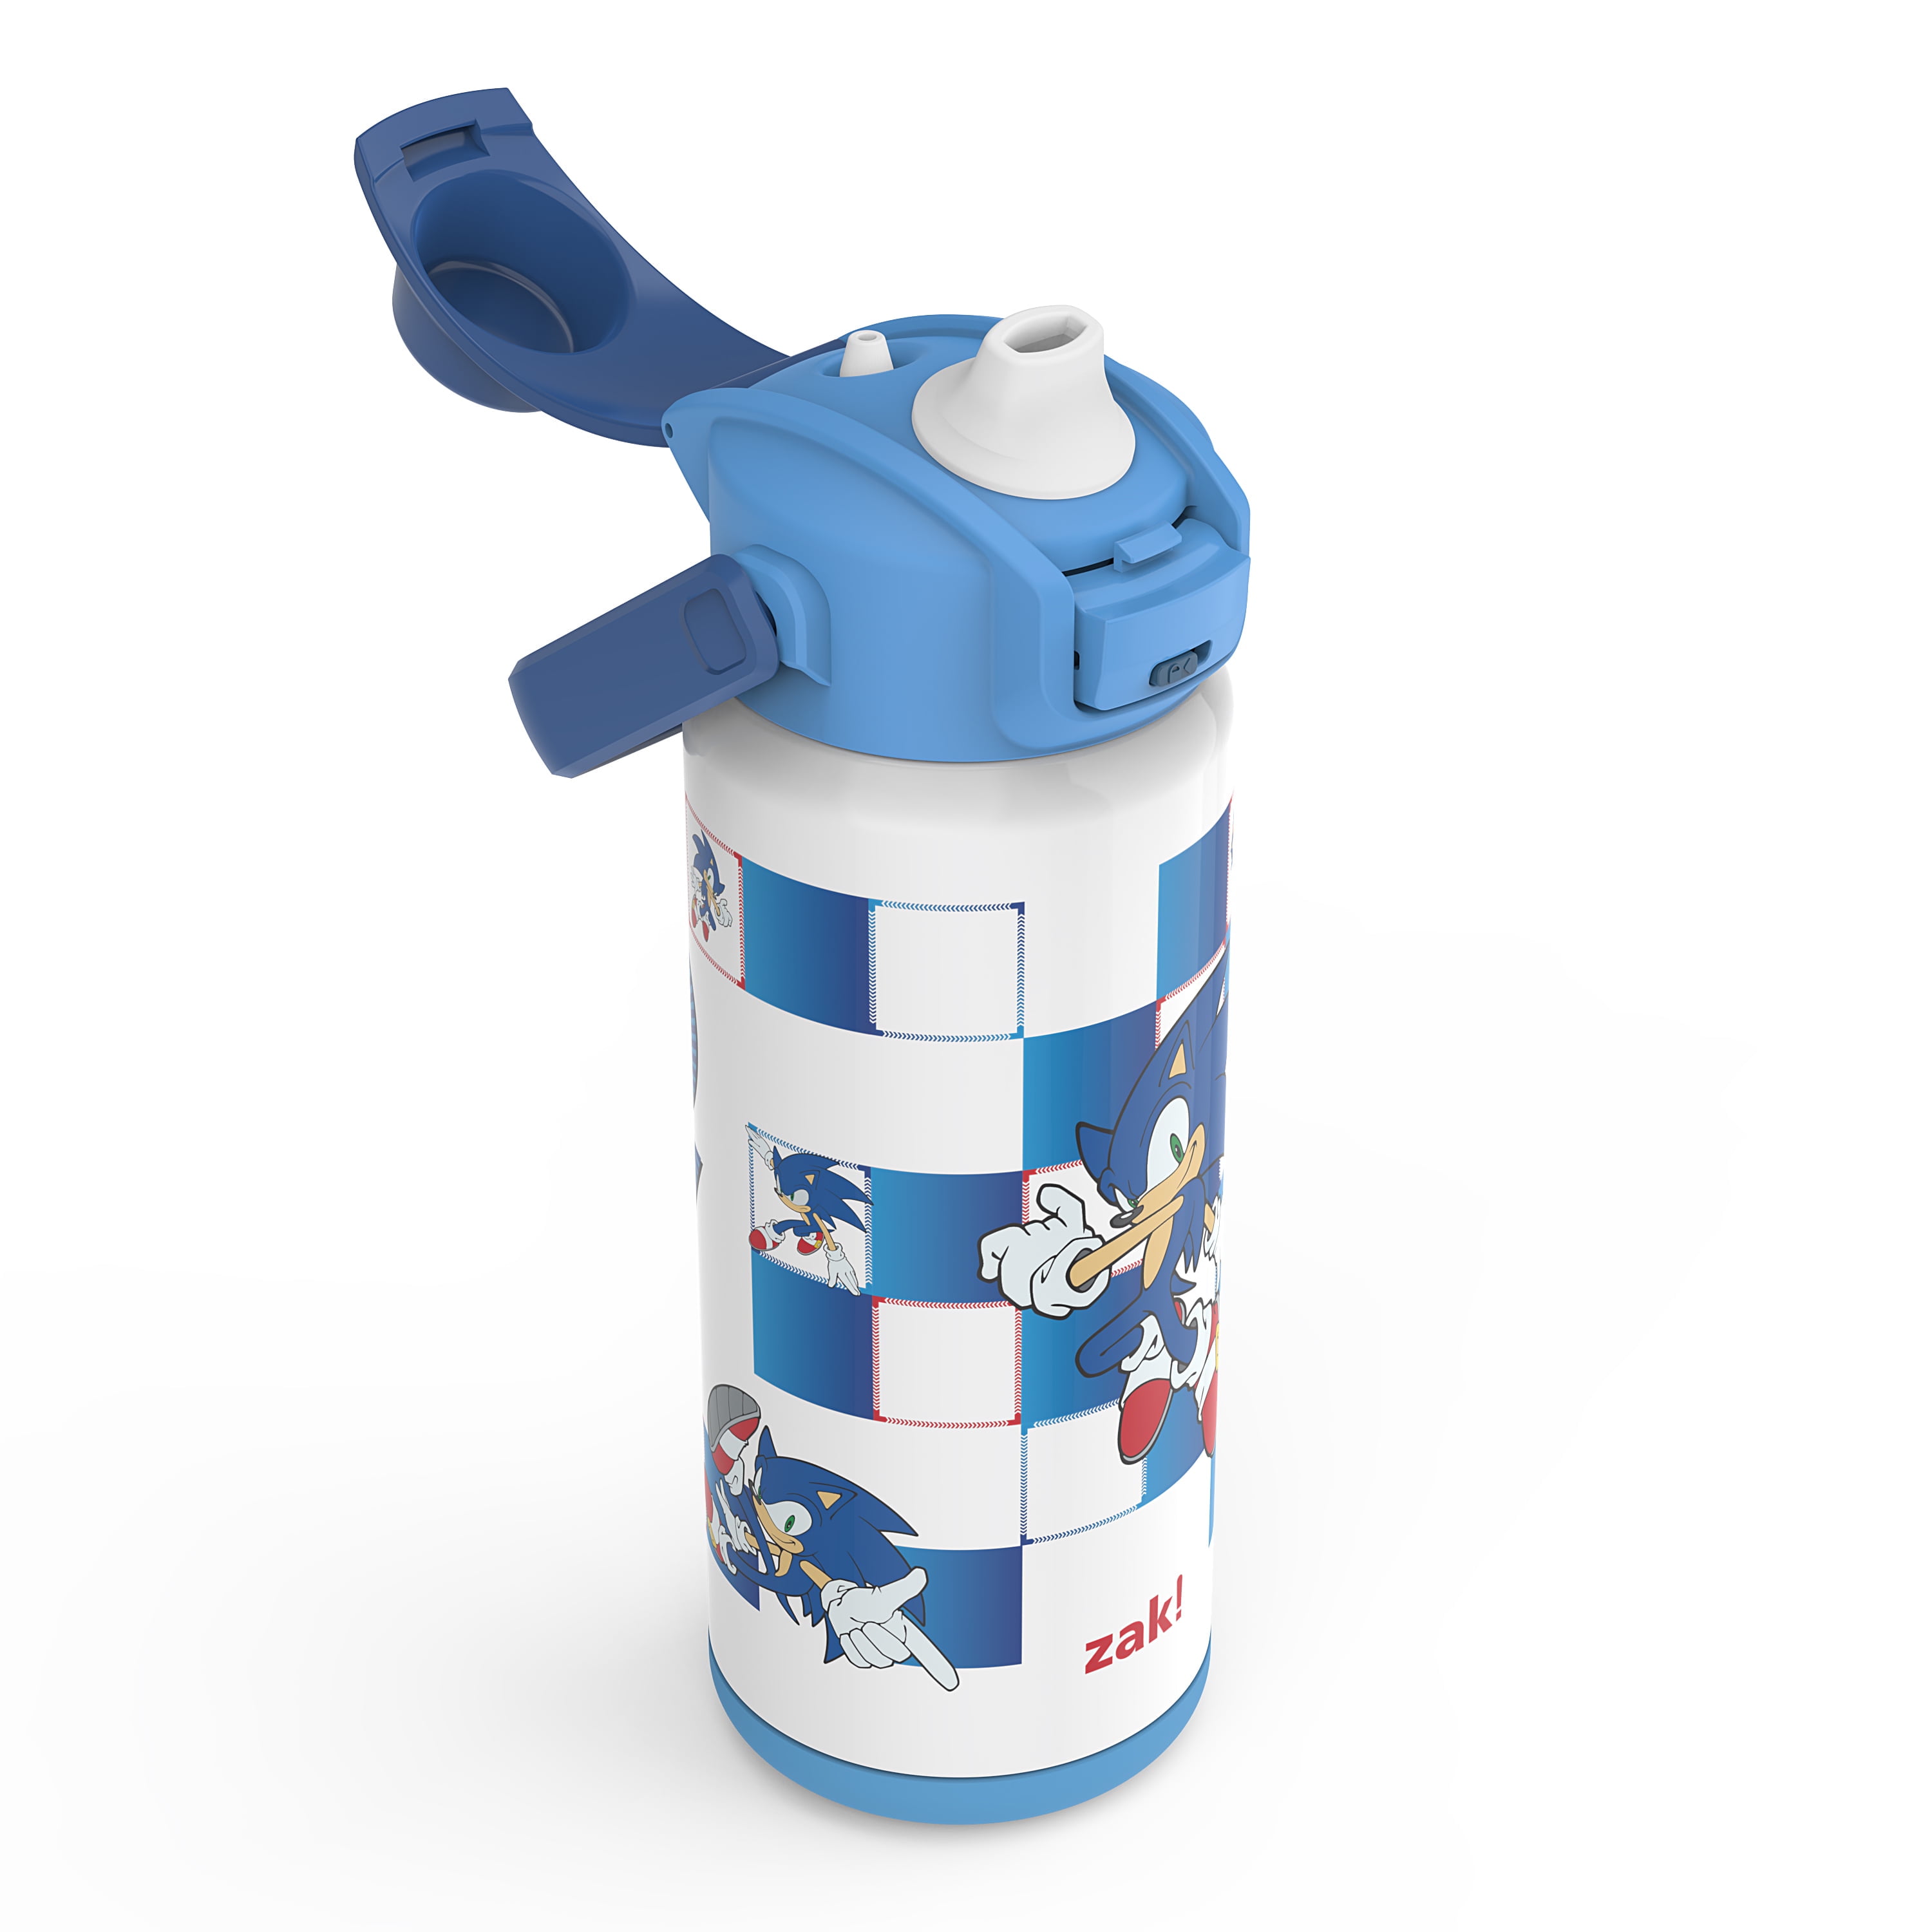 Water Bottle Drink Tube Kit – 2 Foot Adventures